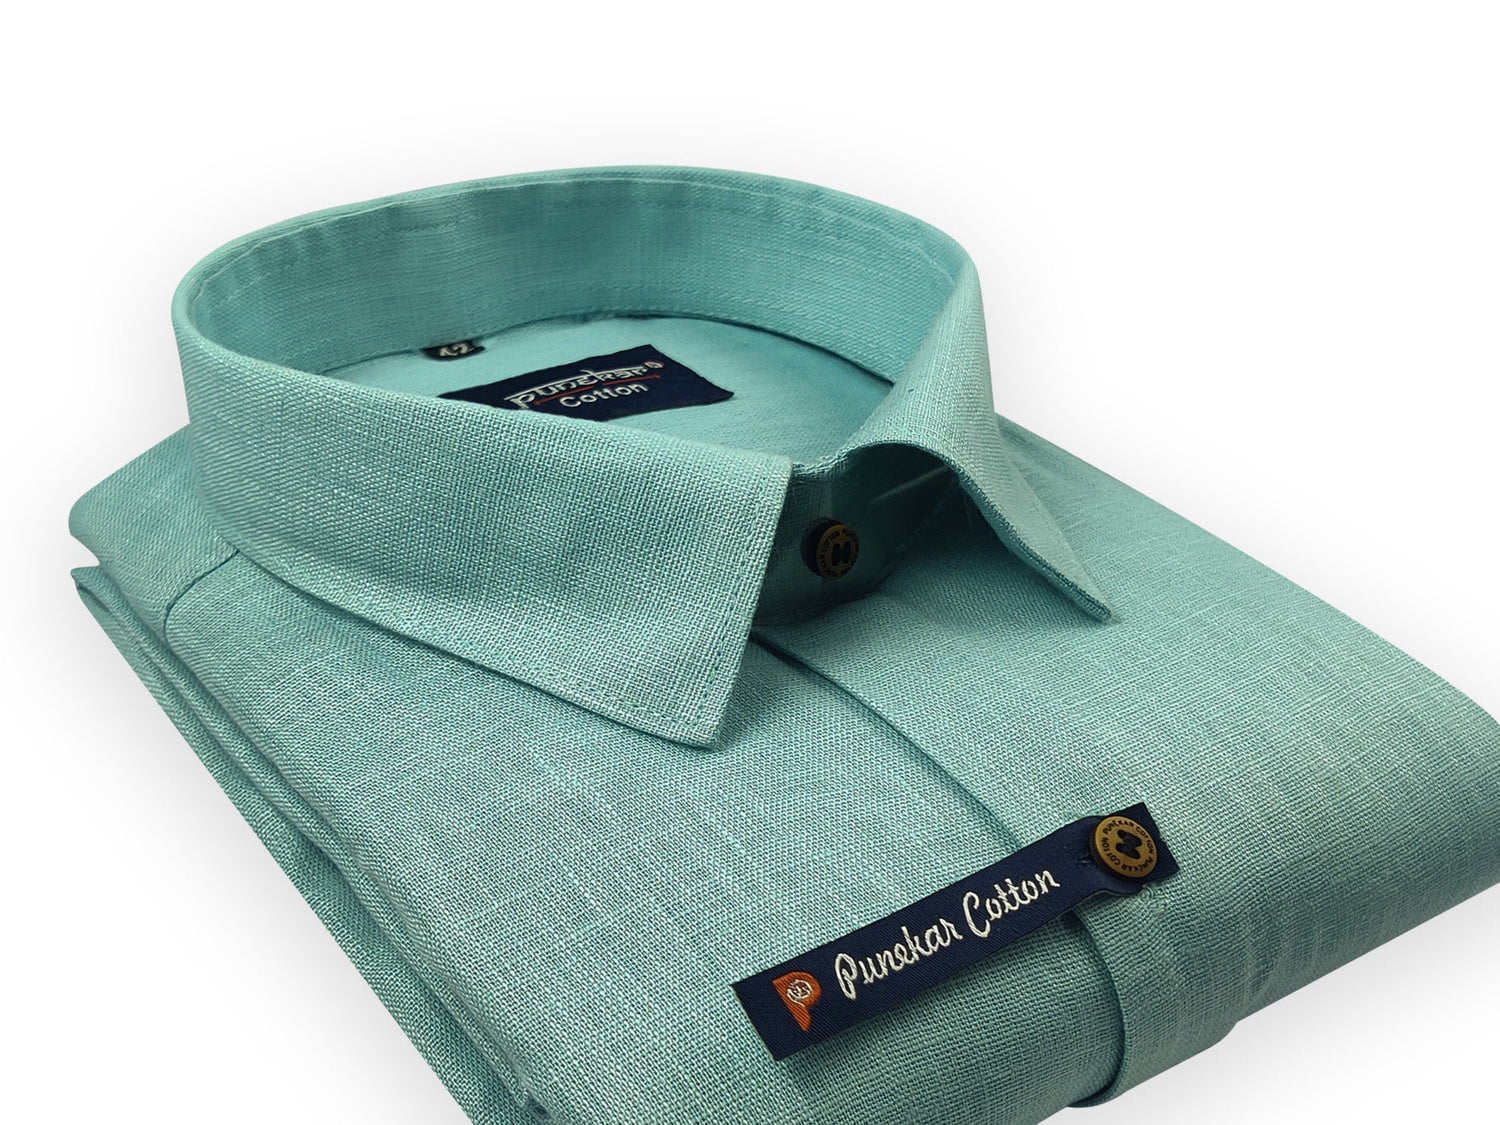 Aqua Green Color Linenza Linen Formal Shirts For Men - Punekar Cotton